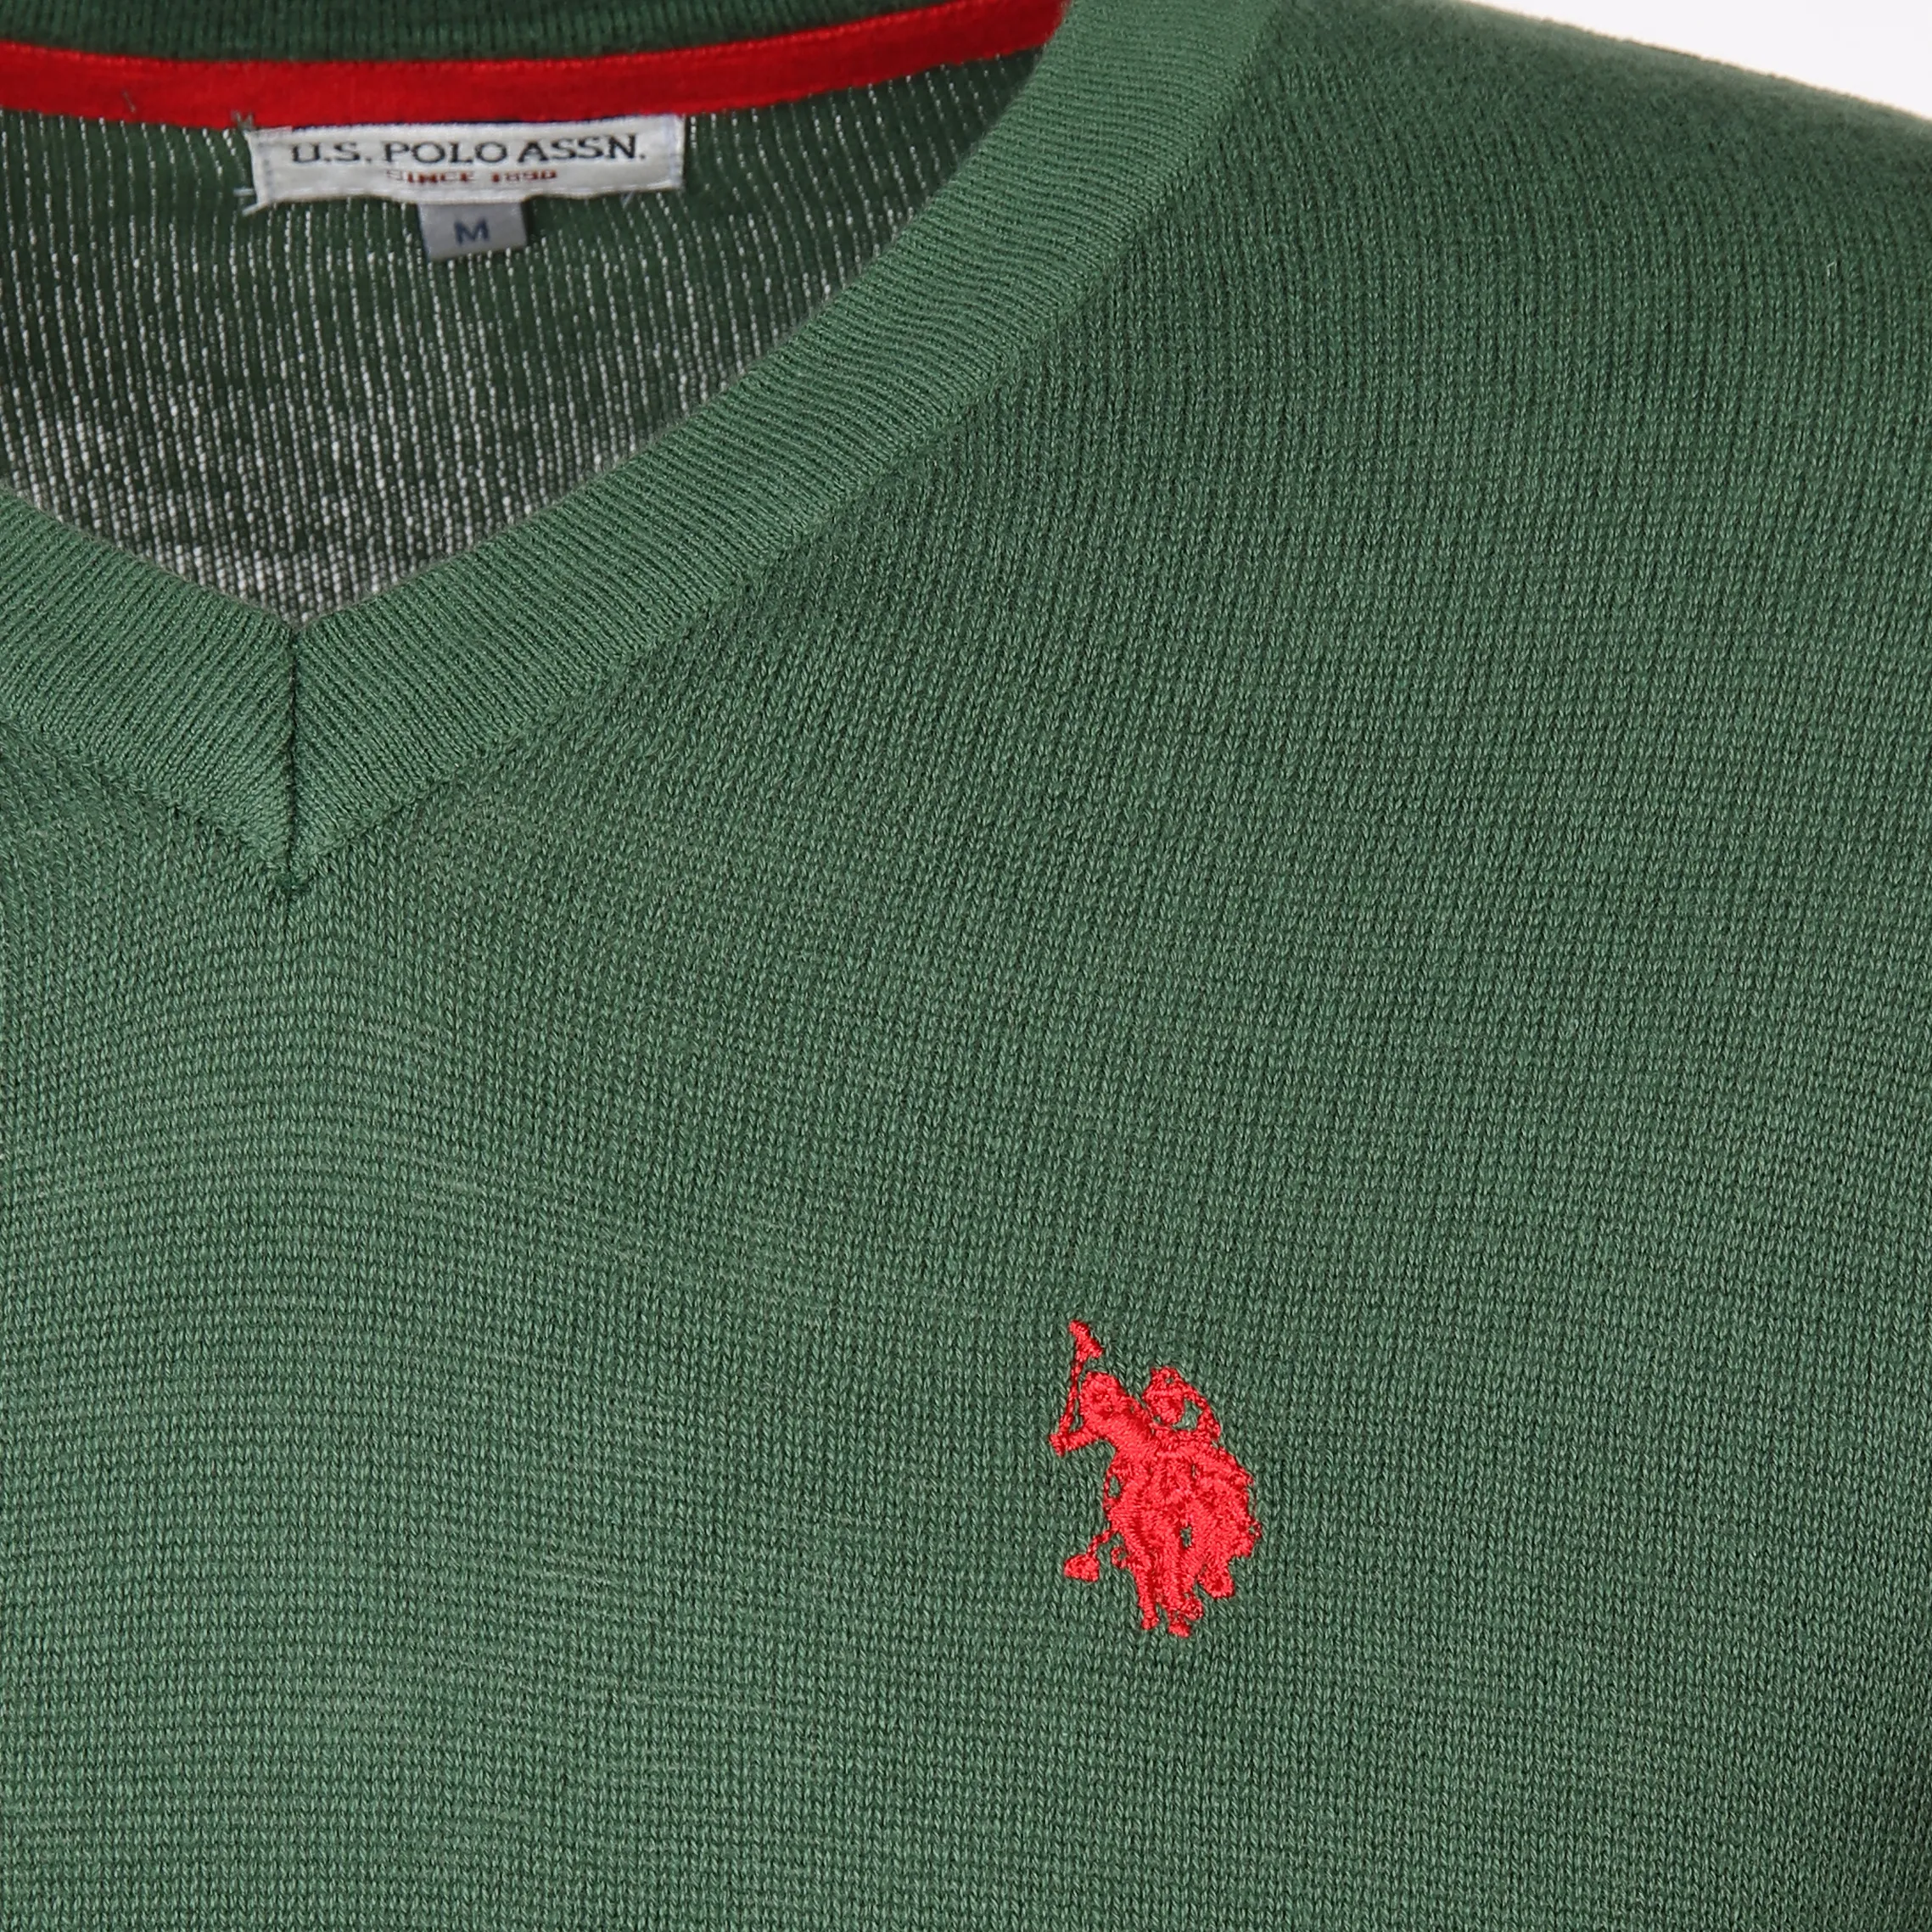 U.S. Polo Assn. He. Pullover V-Ausschnitt Grün 889560 GRÜN 3